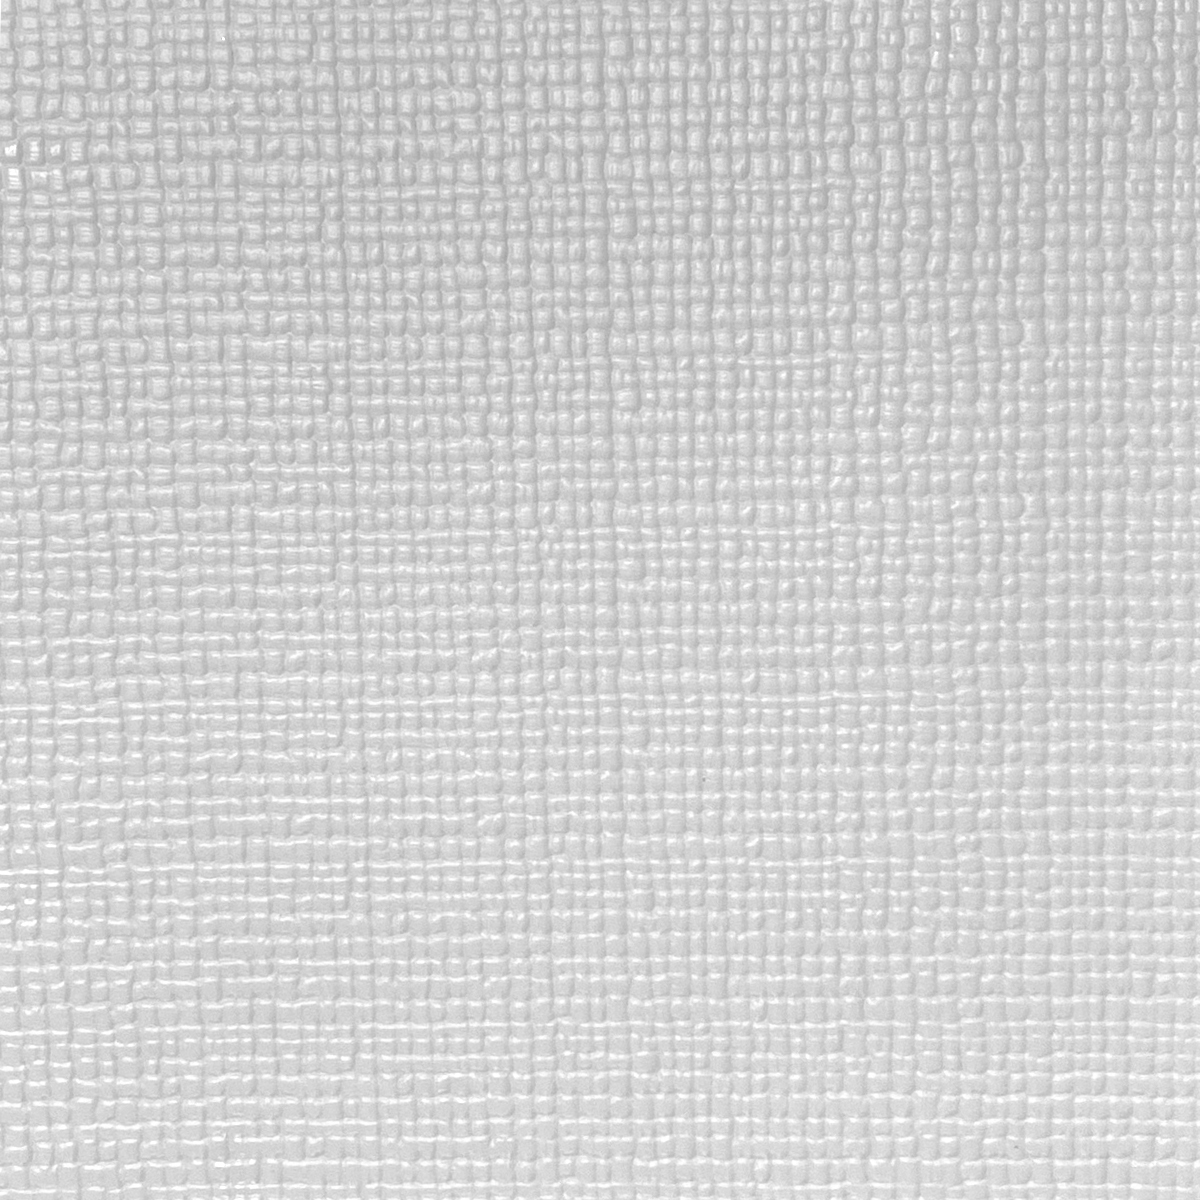 디자인스킨 셀프시공 롤매트 3m (110 x 300 x 1.6cm) - 베이직 그레이